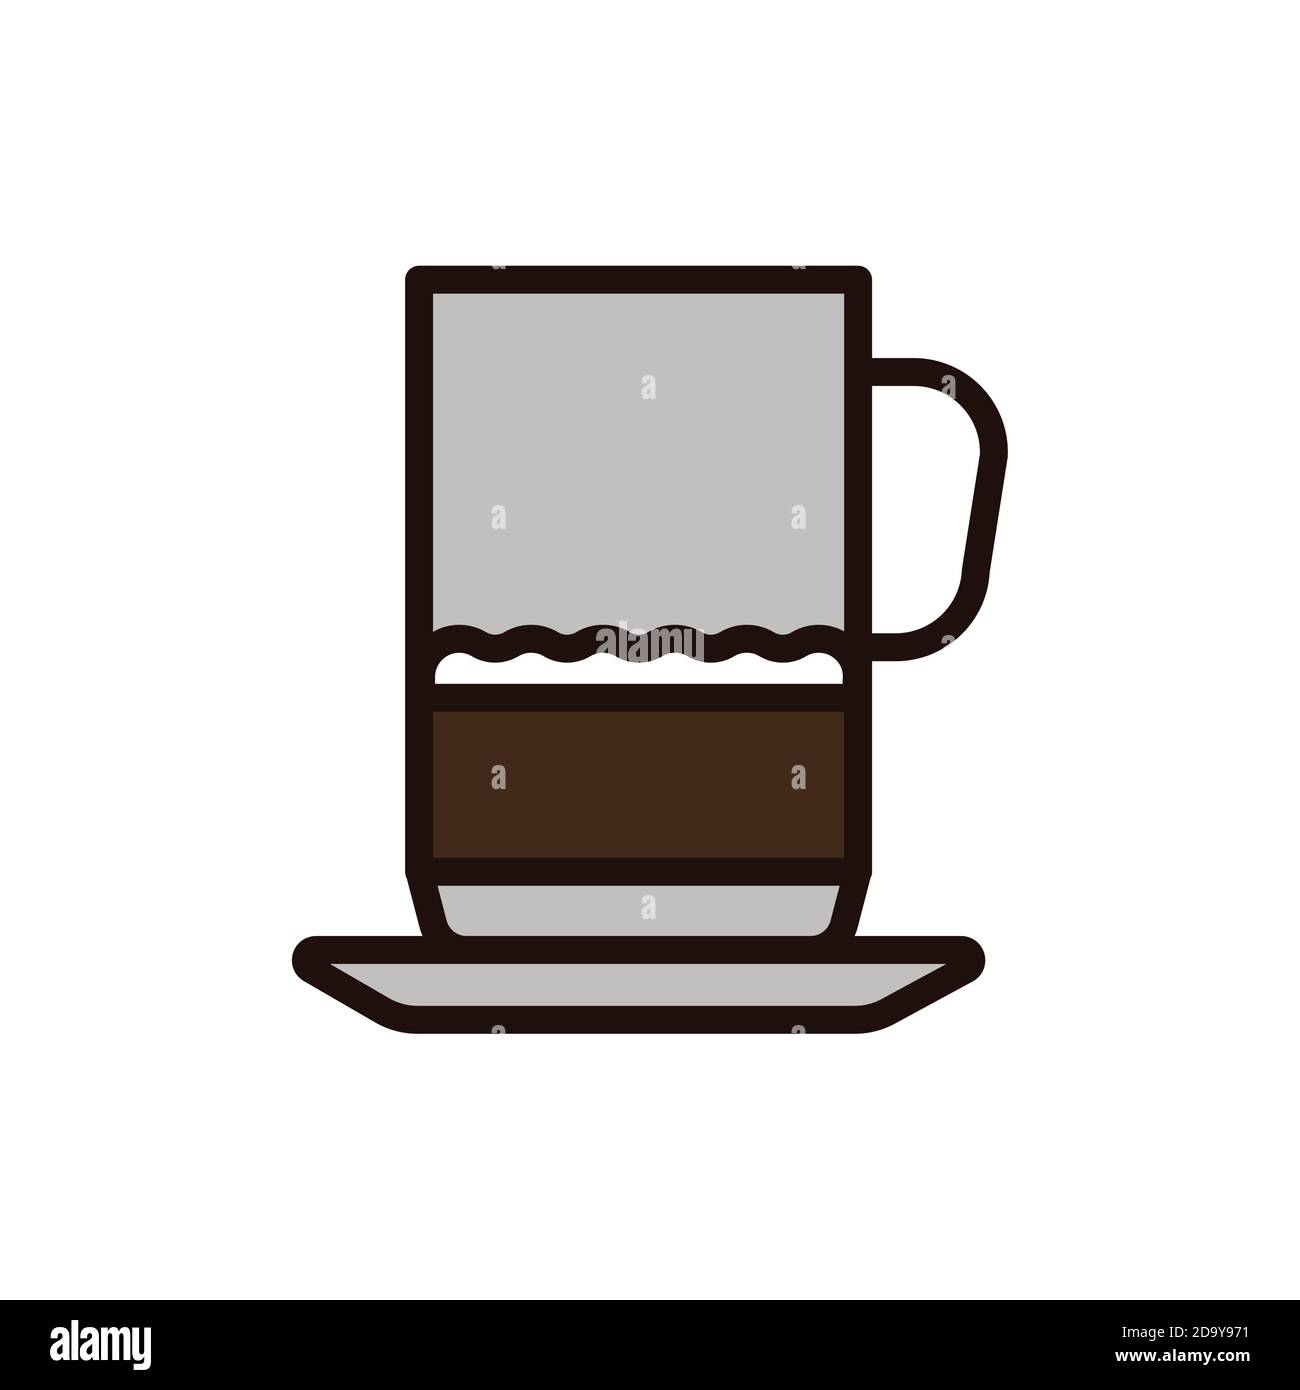 set of coffee cups, espresso glass, coffee latte, cappuccino, mocha,  americano,caramel macchiato,vector design. Stock Vector